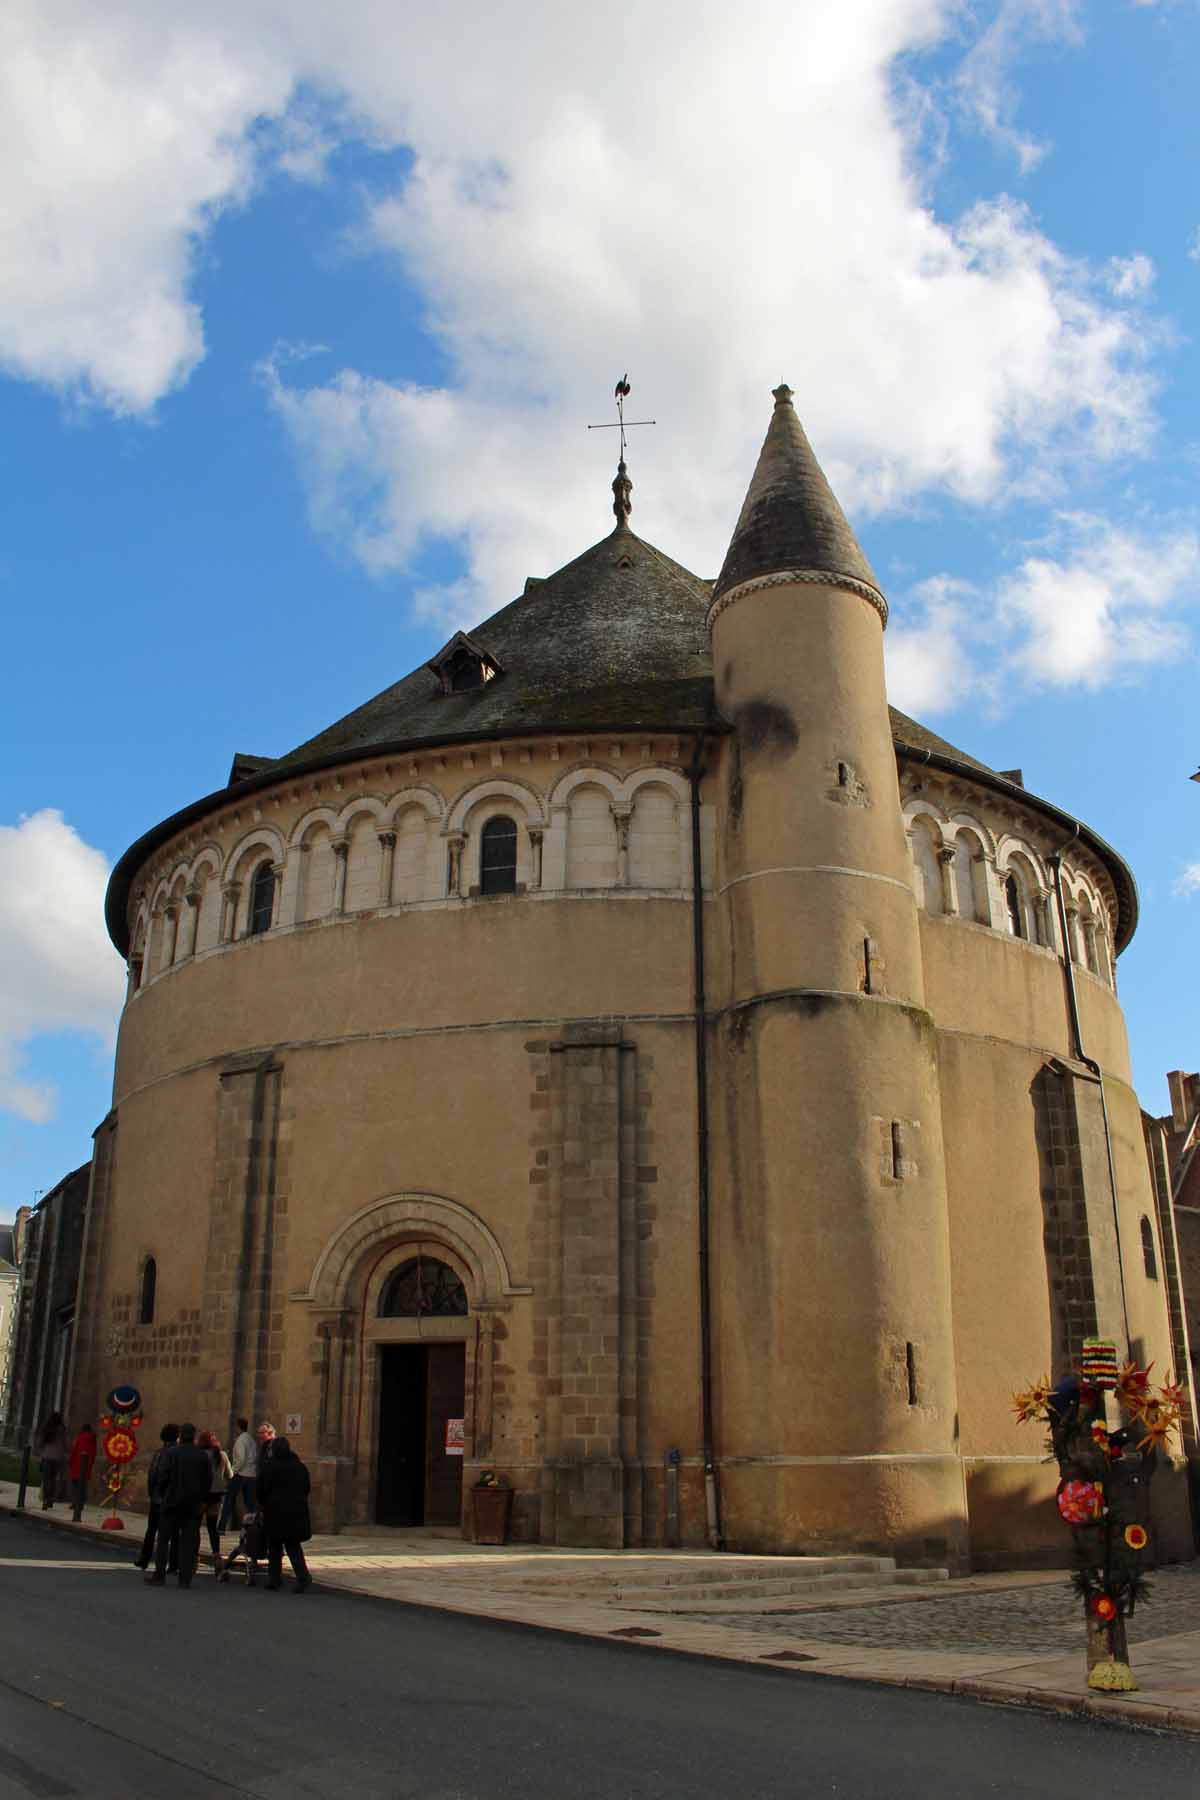 Neuvy-Saint-Sépulchre, collégiale Saint-Etienne, piliers